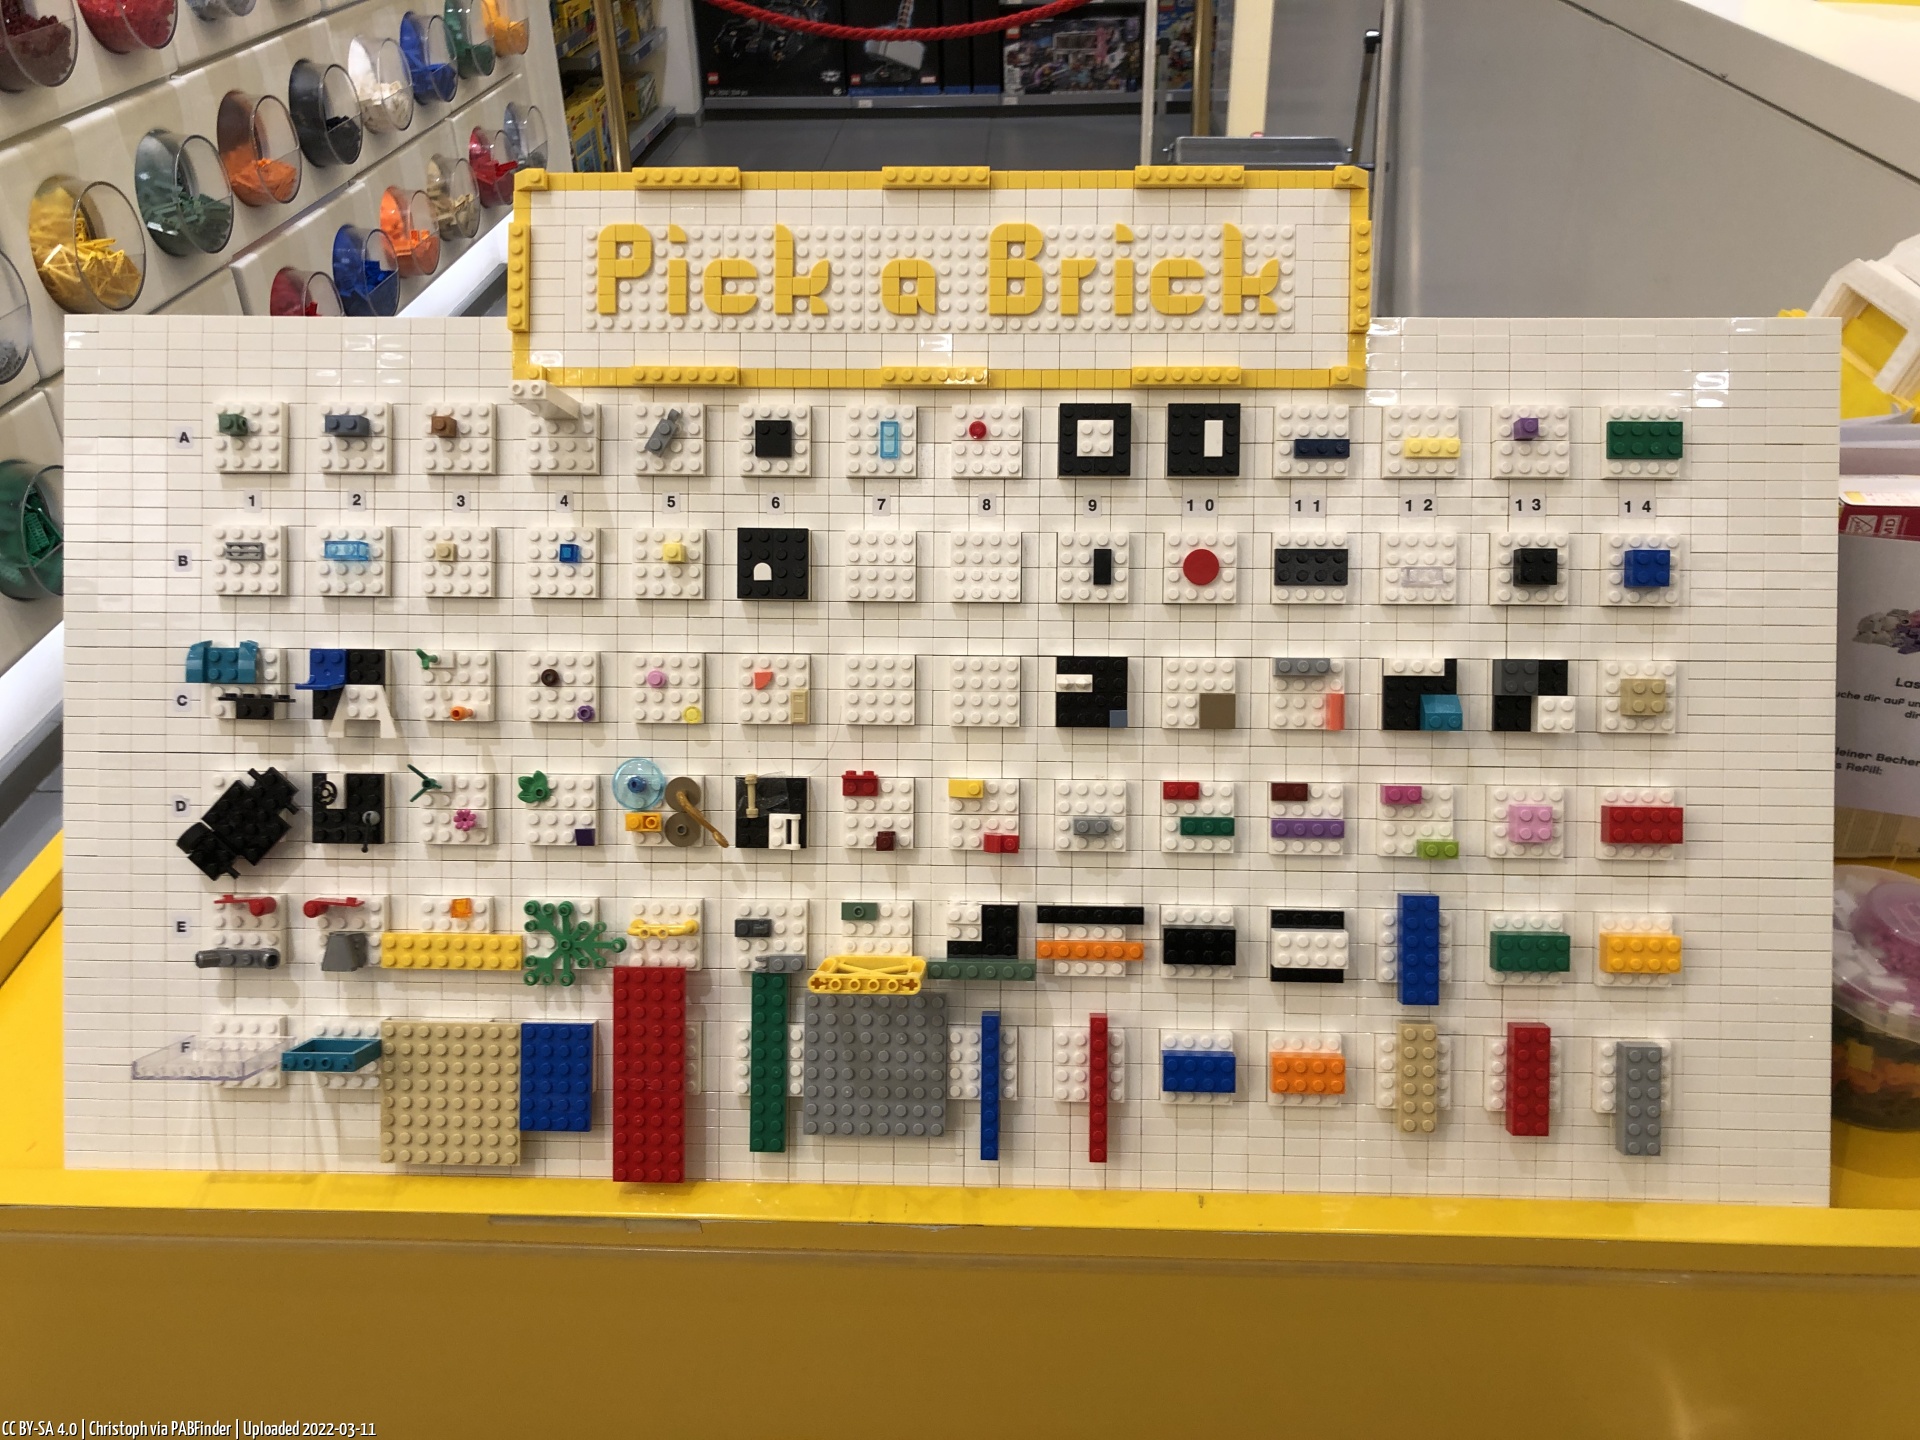 Pick a Brick Hamburg (Christoph am 11.03.22, 19:47:00)